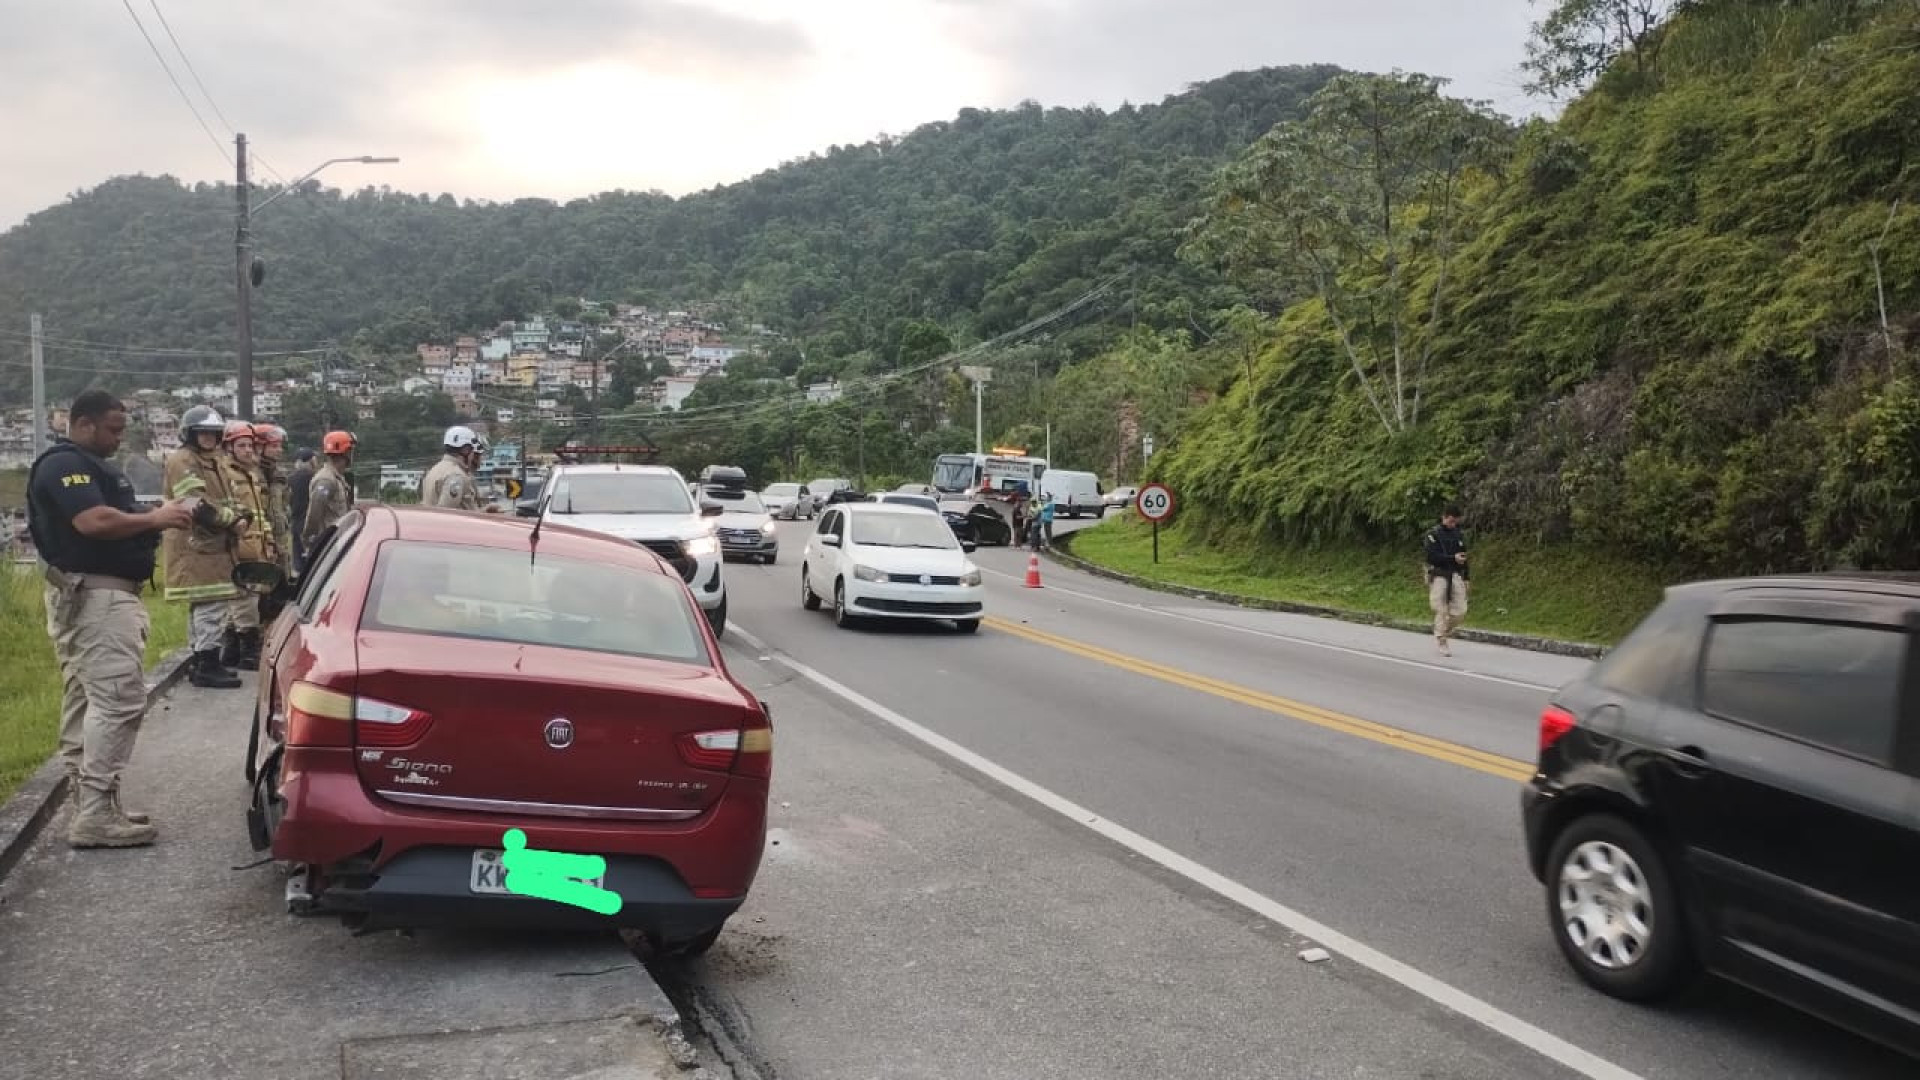 Trânsito  fluiu em meia pista com lentidão por conta do acidente - Divulgação/CBMERJ